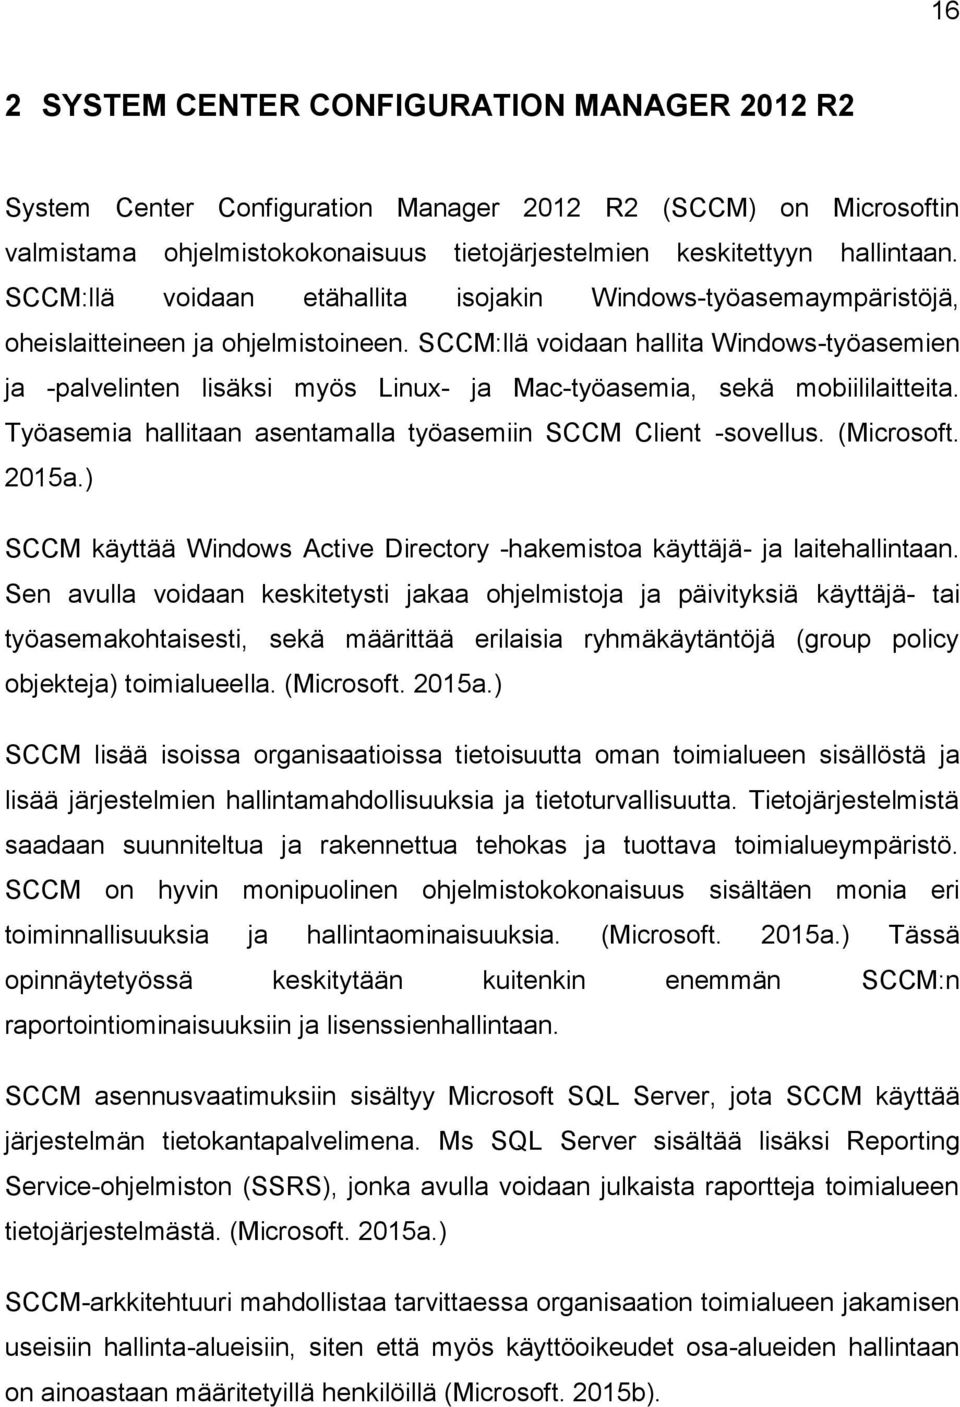 SCCM:llä voidaan hallita Windows-työasemien ja -palvelinten lisäksi myös Linux- ja Mac-työasemia, sekä mobiililaitteita. Työasemia hallitaan asentamalla työasemiin SCCM Client -sovellus. (Microsoft.